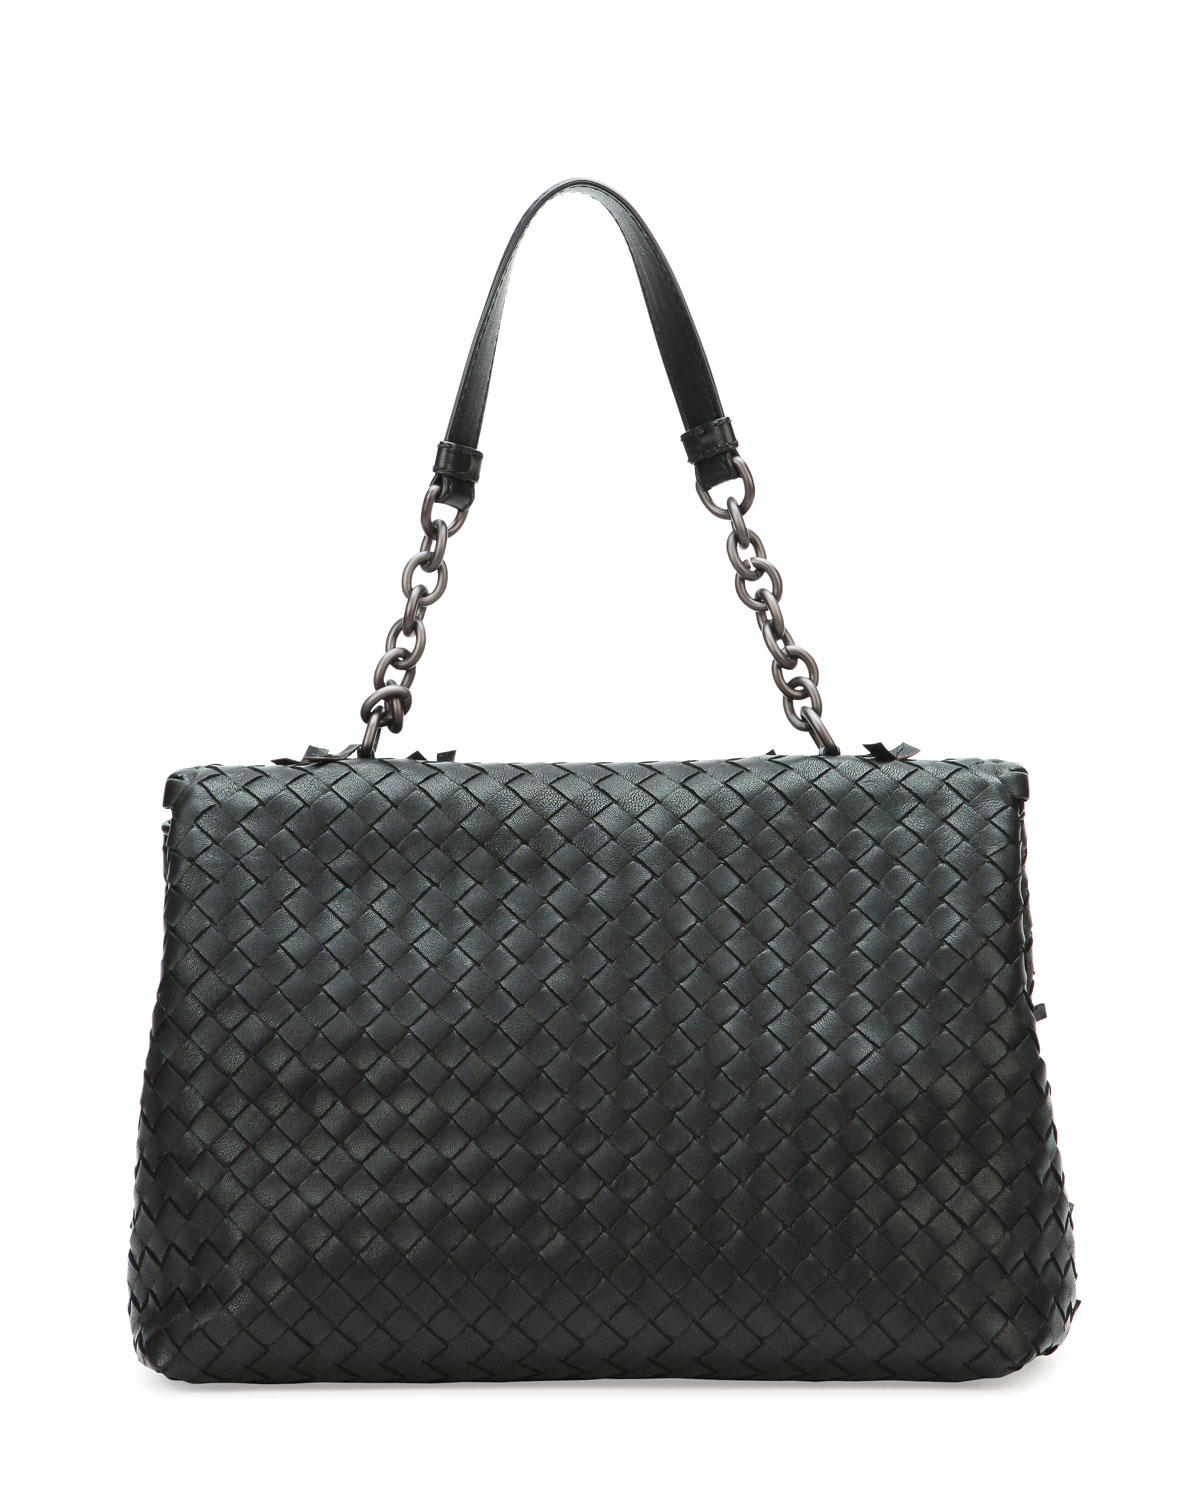 Lyst - Bottega Veneta Olimpia Tobu Fringe Shoulder Bag in Black